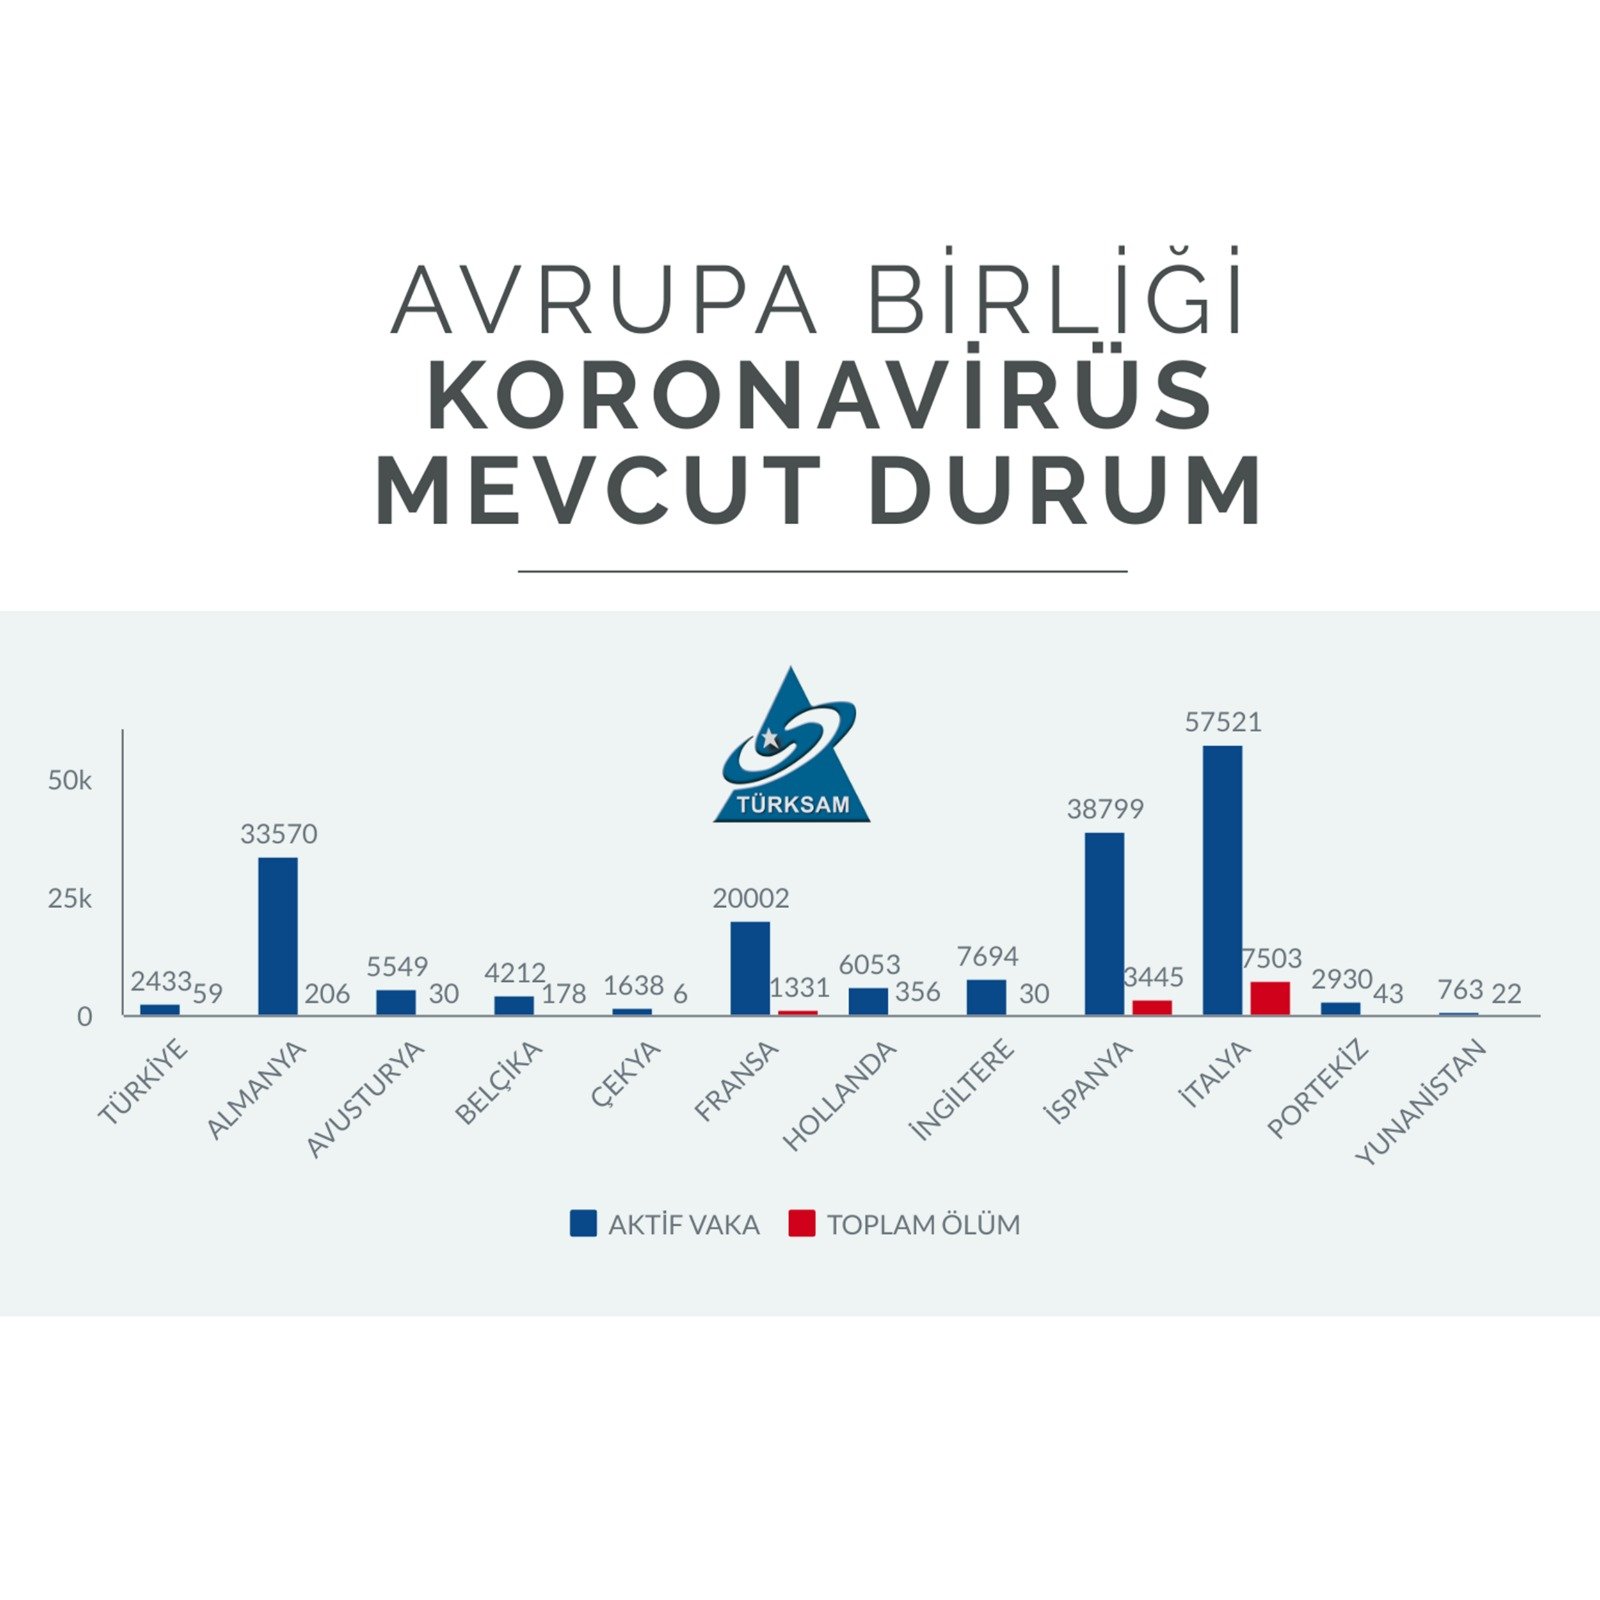 Türkiye - Avrupa Birliği Ülkeleri Koronavirüs Test/Vaka Oranları Karşılaştırması